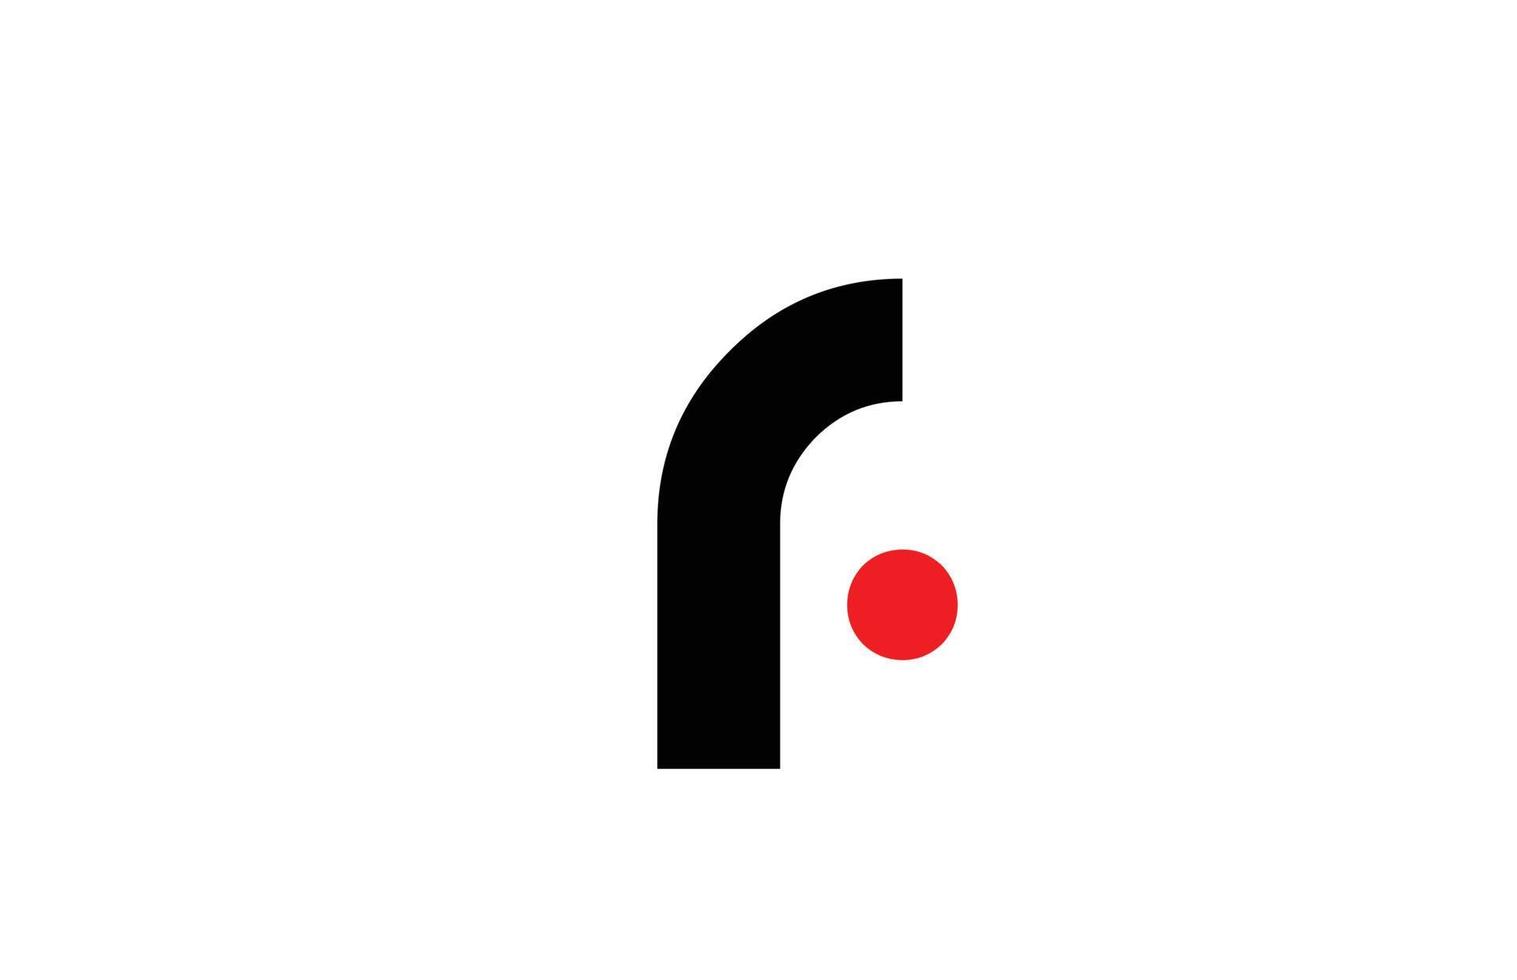 zwart wit r alfabet letter logo pictogram ontwerp. creatieve sjabloon voor zaken en bedrijf vector